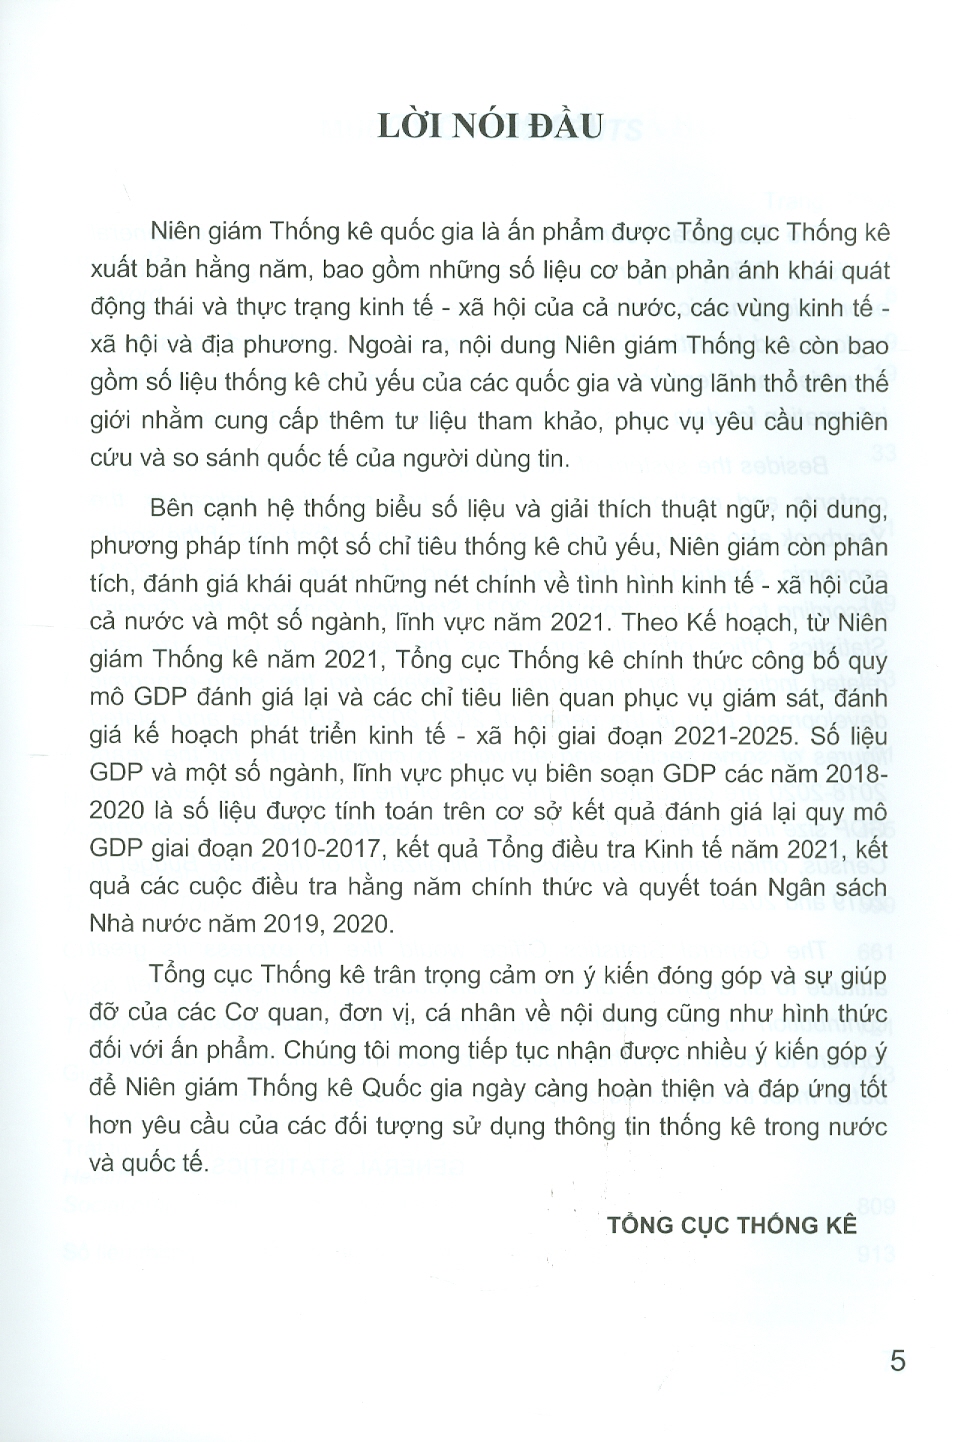 NIÊN GIÁM THỐNG KÊ 2021 (Statistical Yearbook of Viet Nam) - Bìa cứng